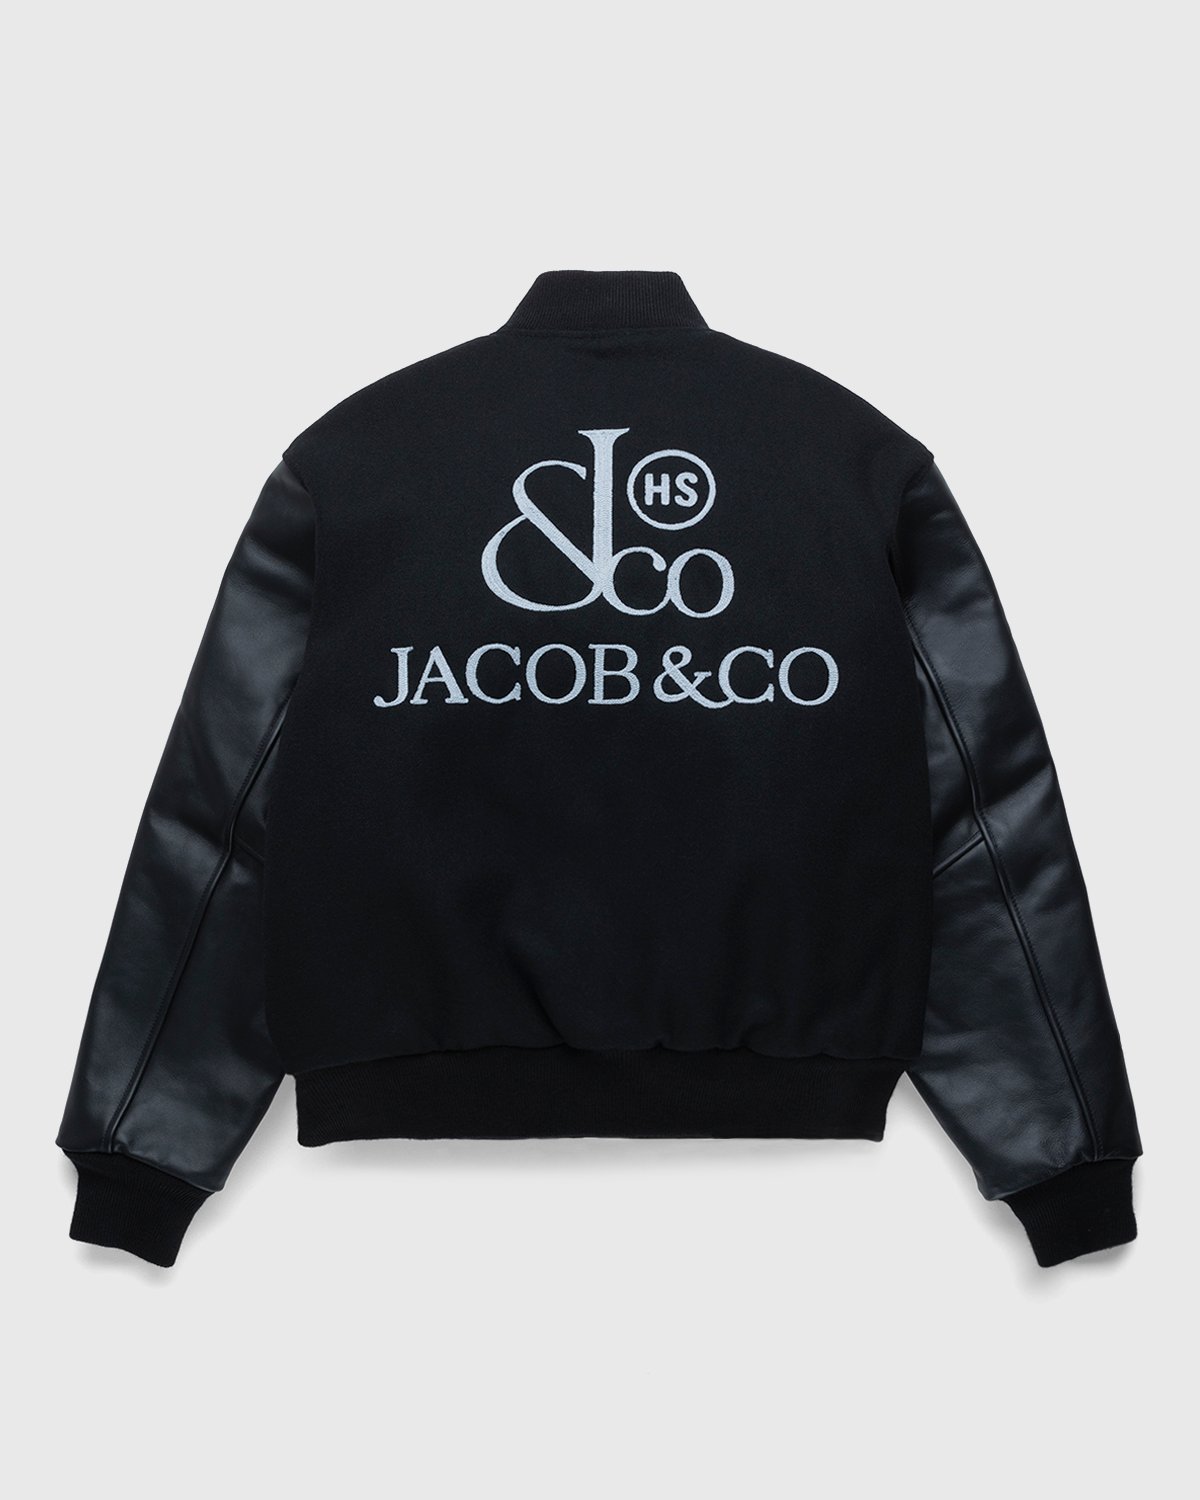 Jacob & Co. x Highsnobiety - Logo Varsity Jacket Black - Clothing - Black - Image 2